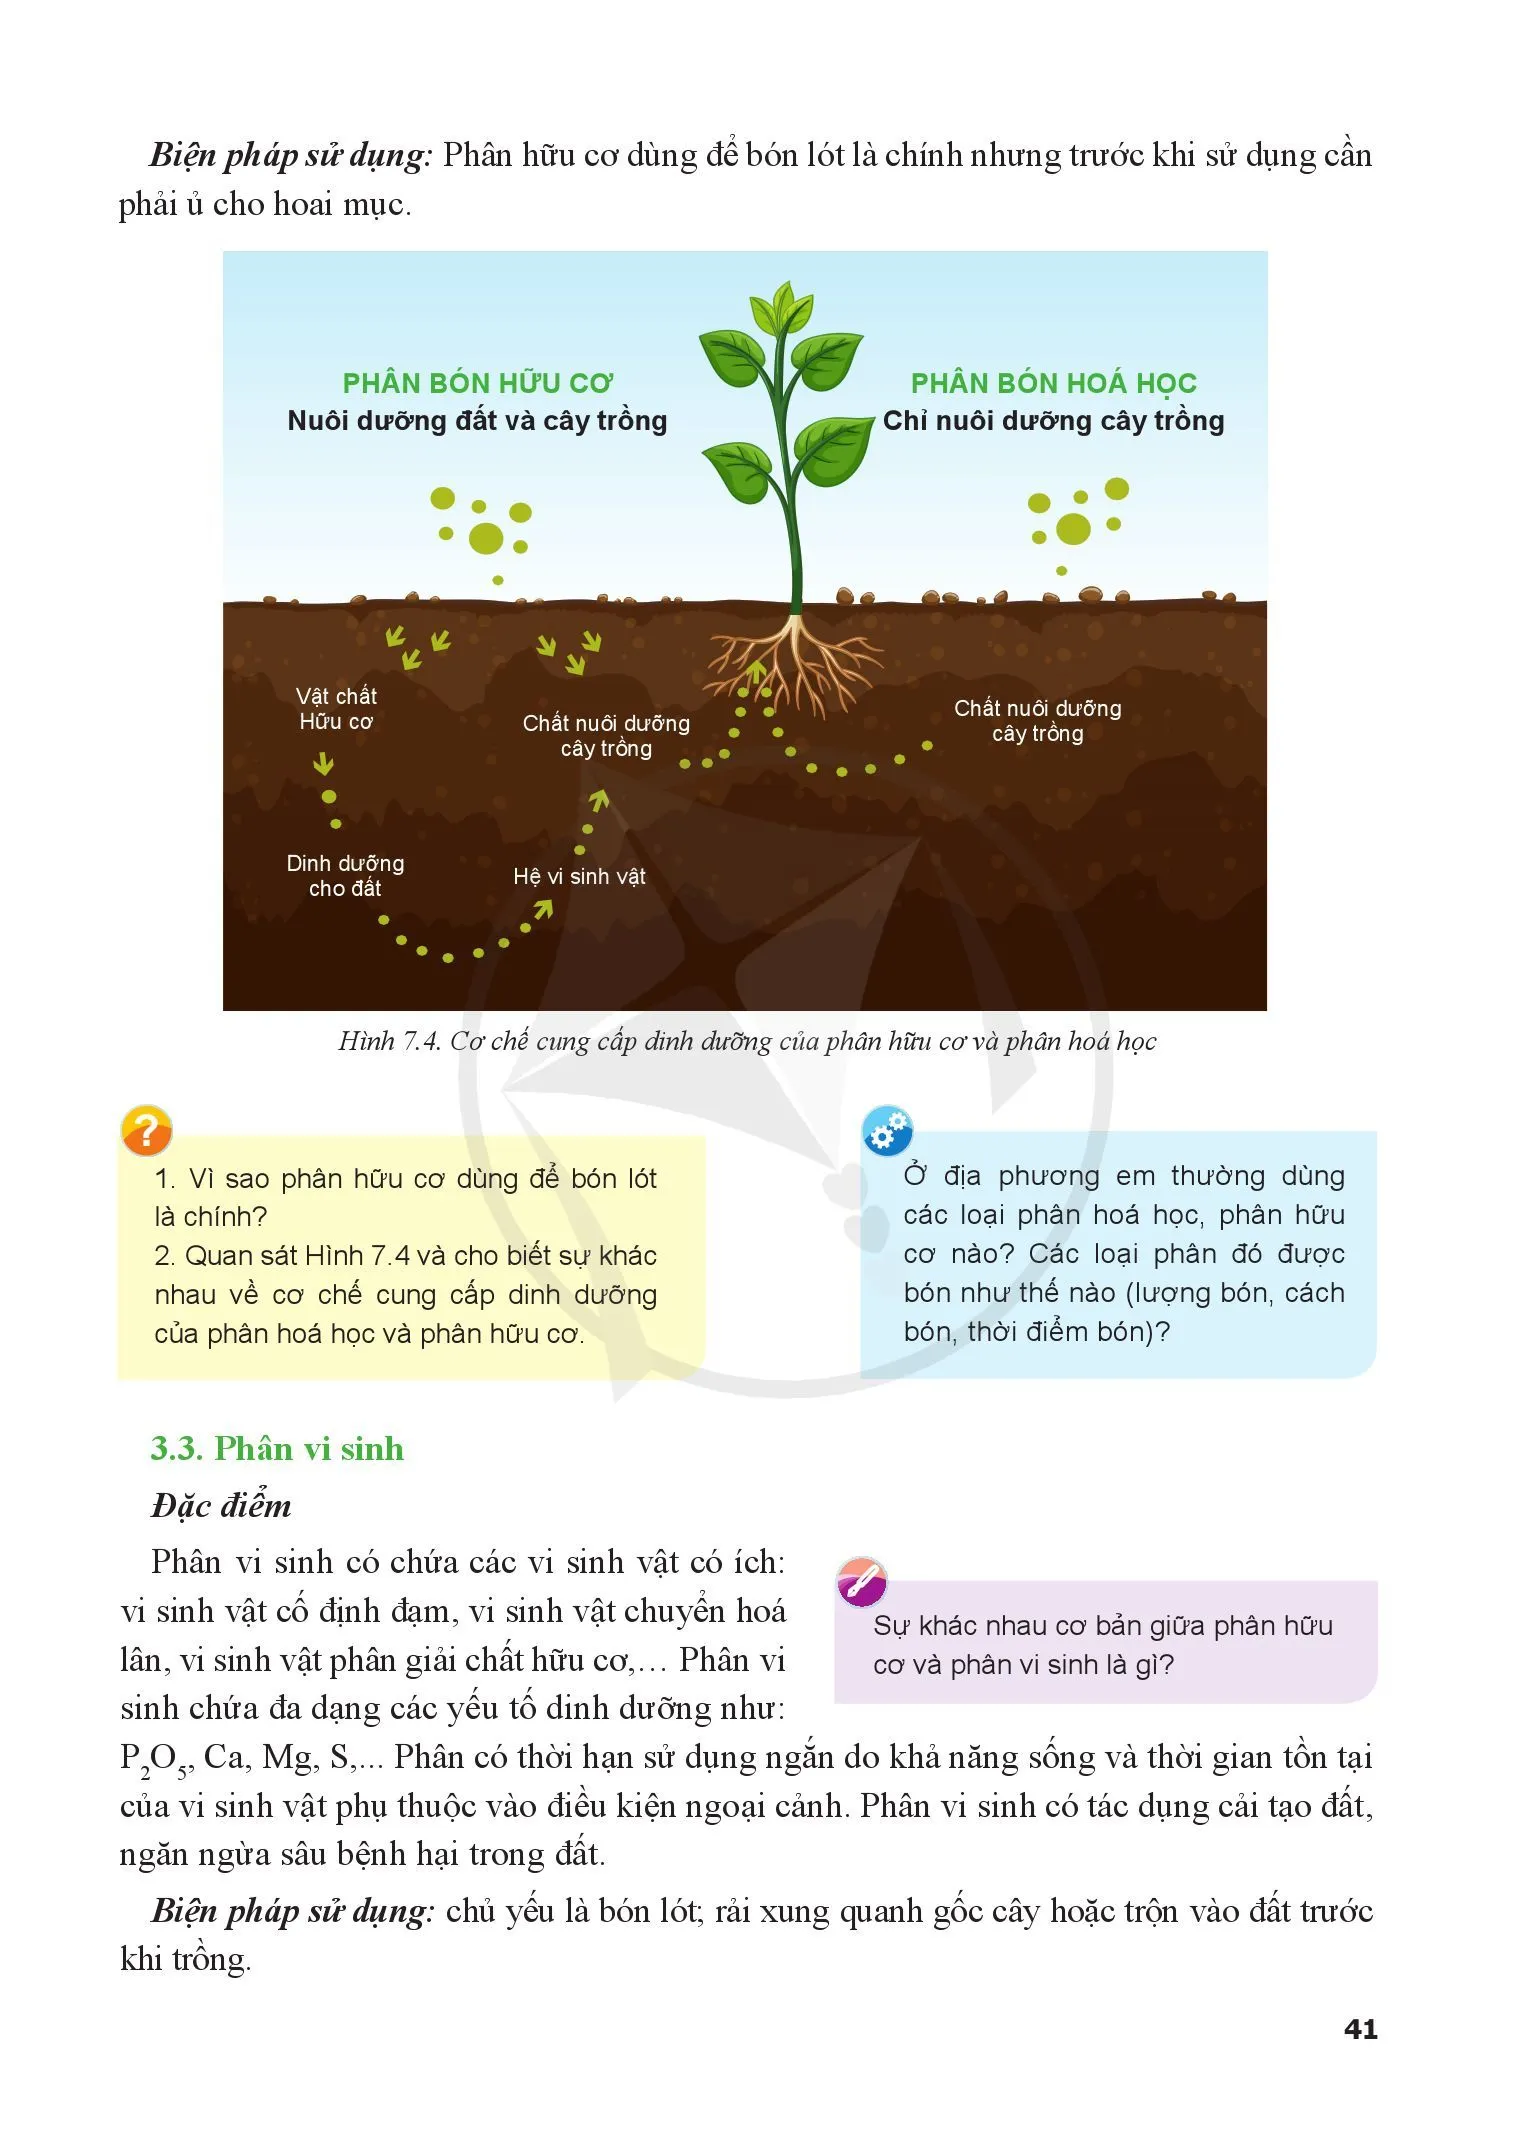 Bài 7. Một số loại phân bón thường dùng trong trồng trọt